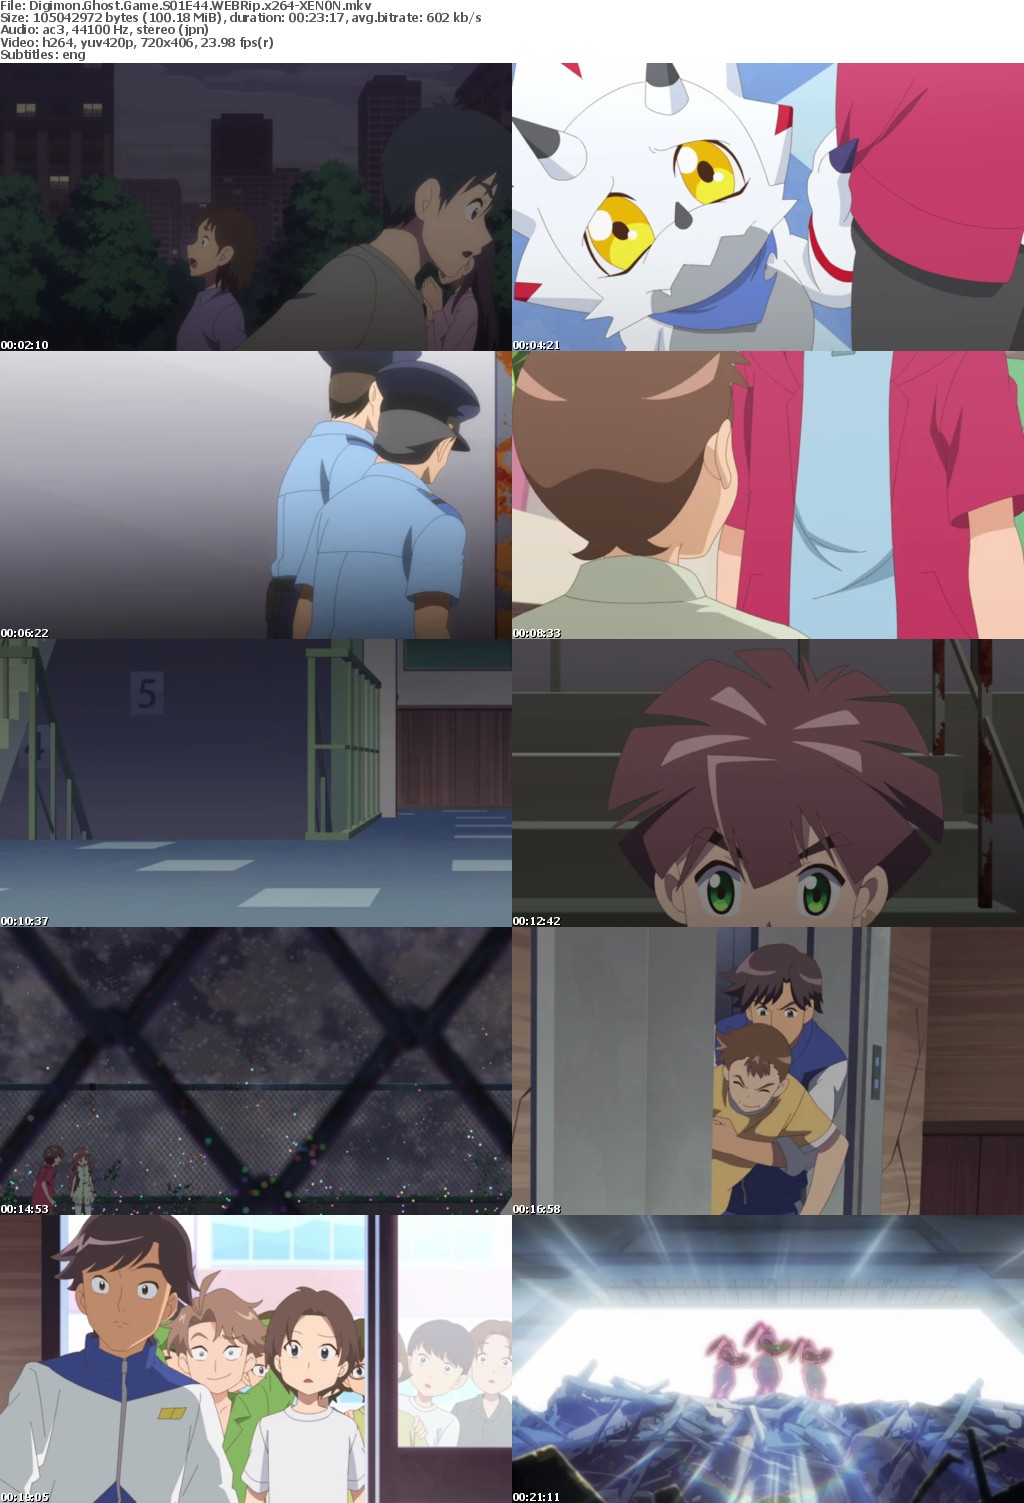 Digimon Ghost Game S01E44 WEBRip x264-XEN0N